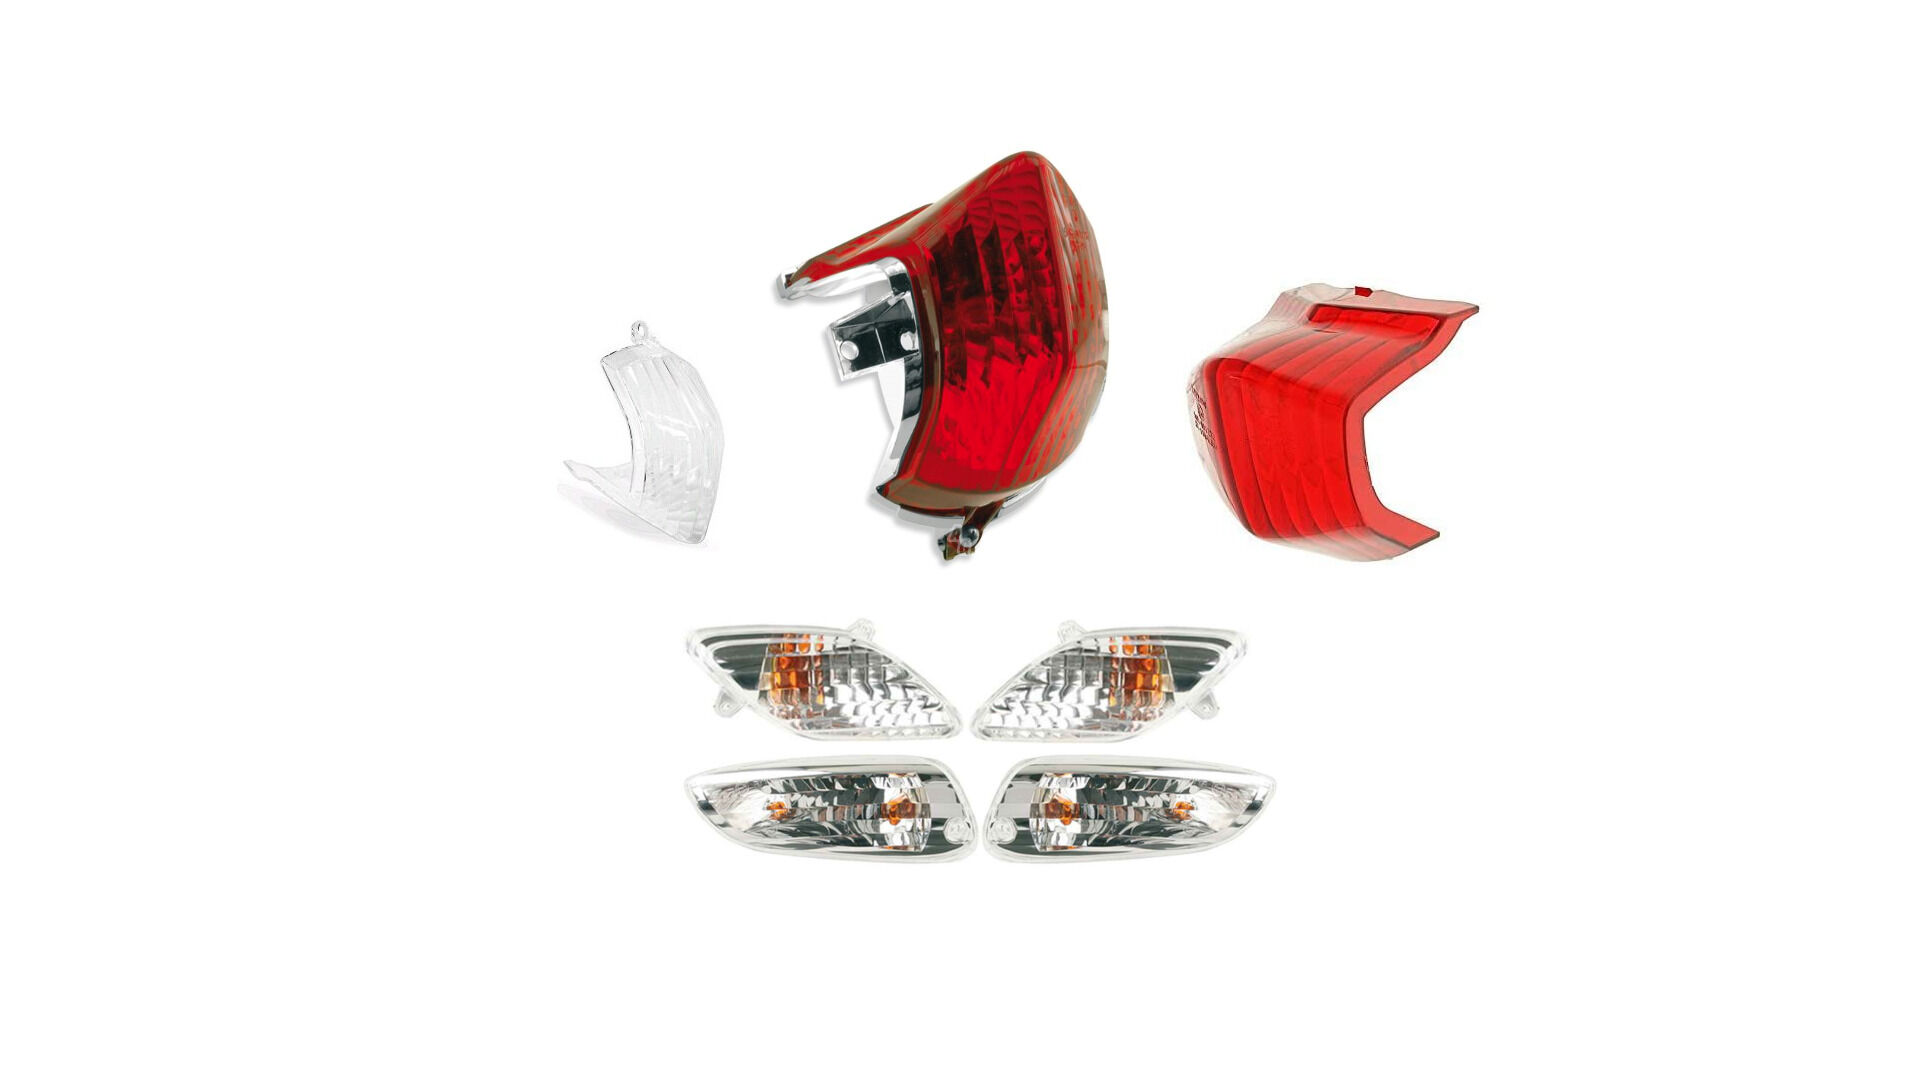 Lempų stikliukai , Scooter / moped Aprilia SR parts